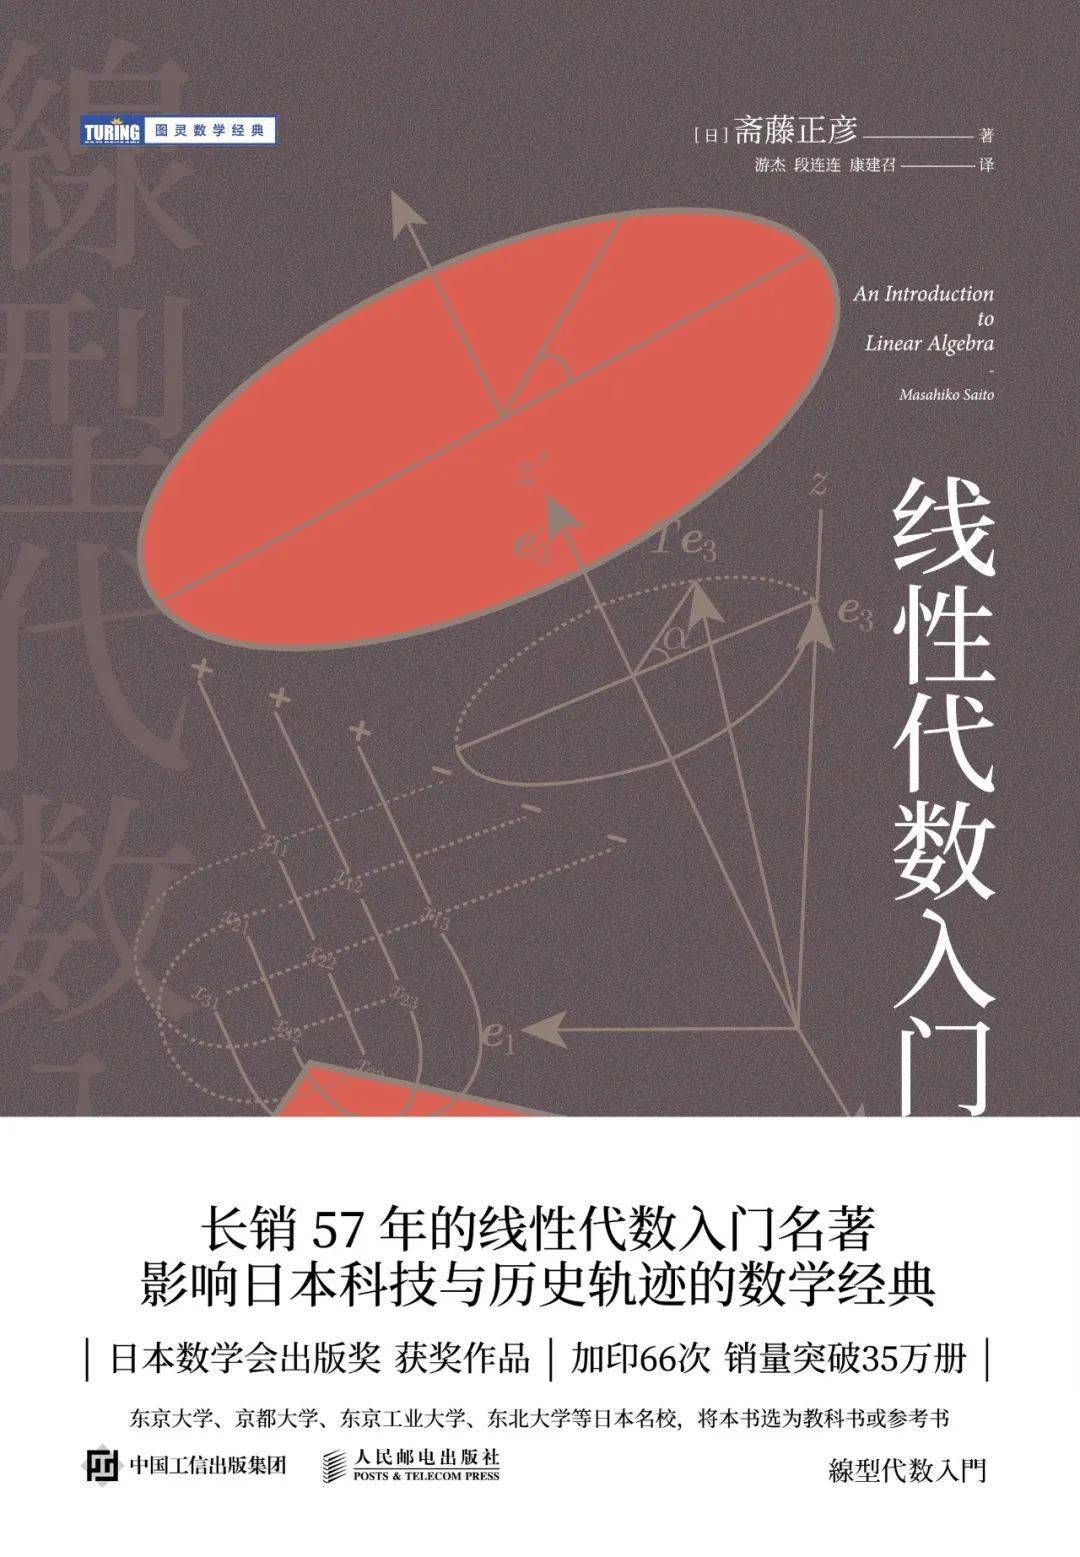 线性代数领域不朽“圣经” | 影响日本科技与历史轨迹的数学经典！_手机搜狐网